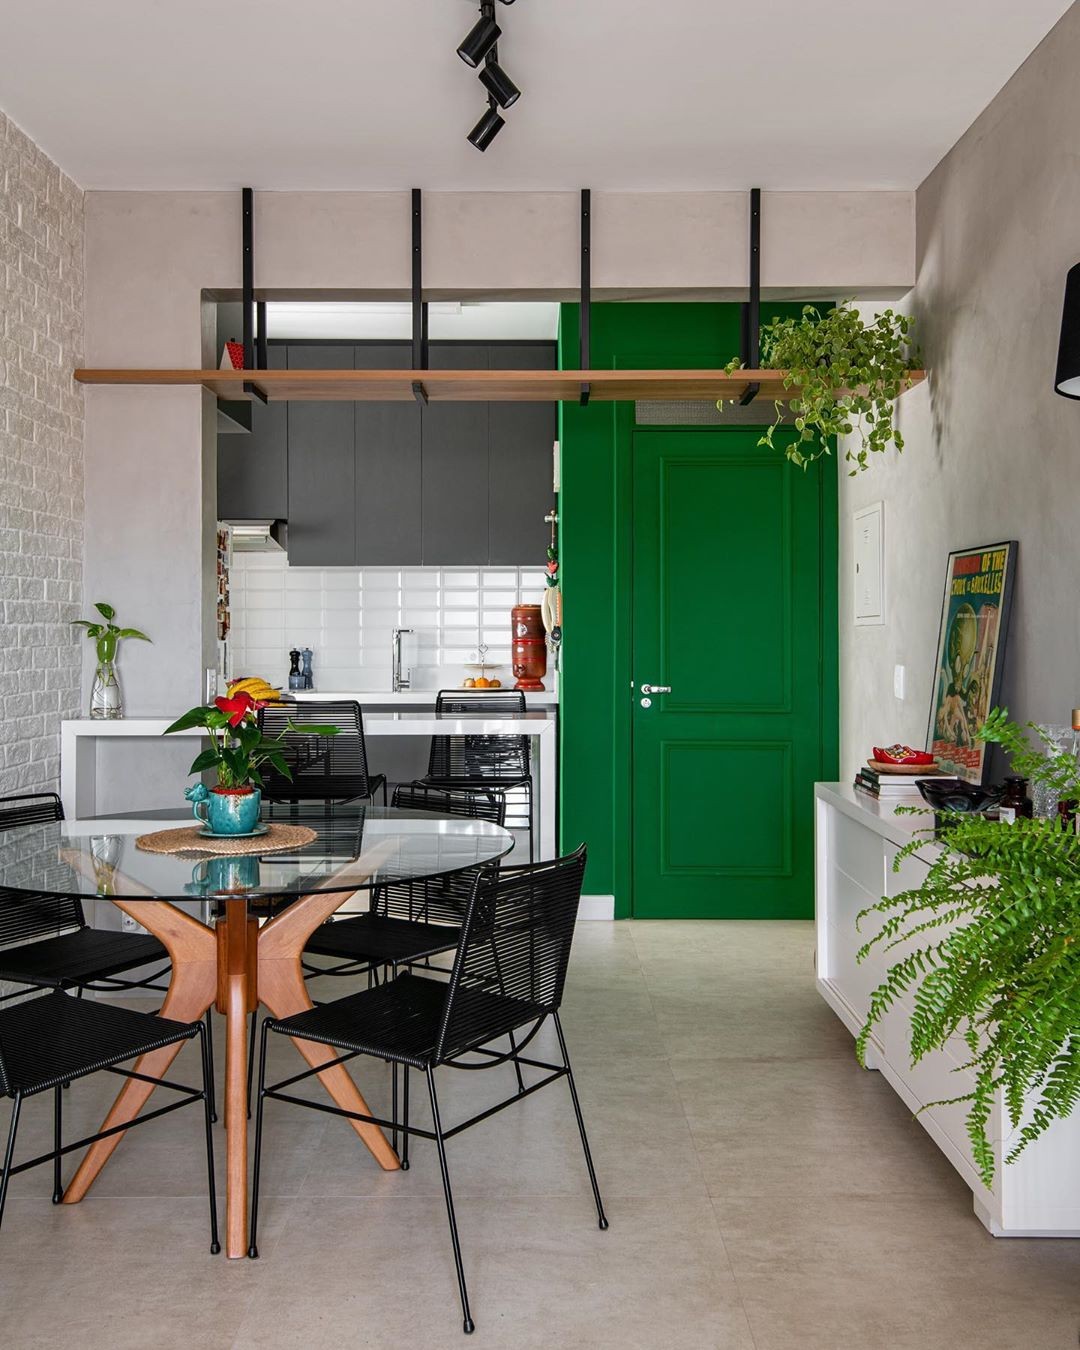 Décor do dia: sala de jantar integrada com plantas e porta colorida (Foto: Favaro Jr)